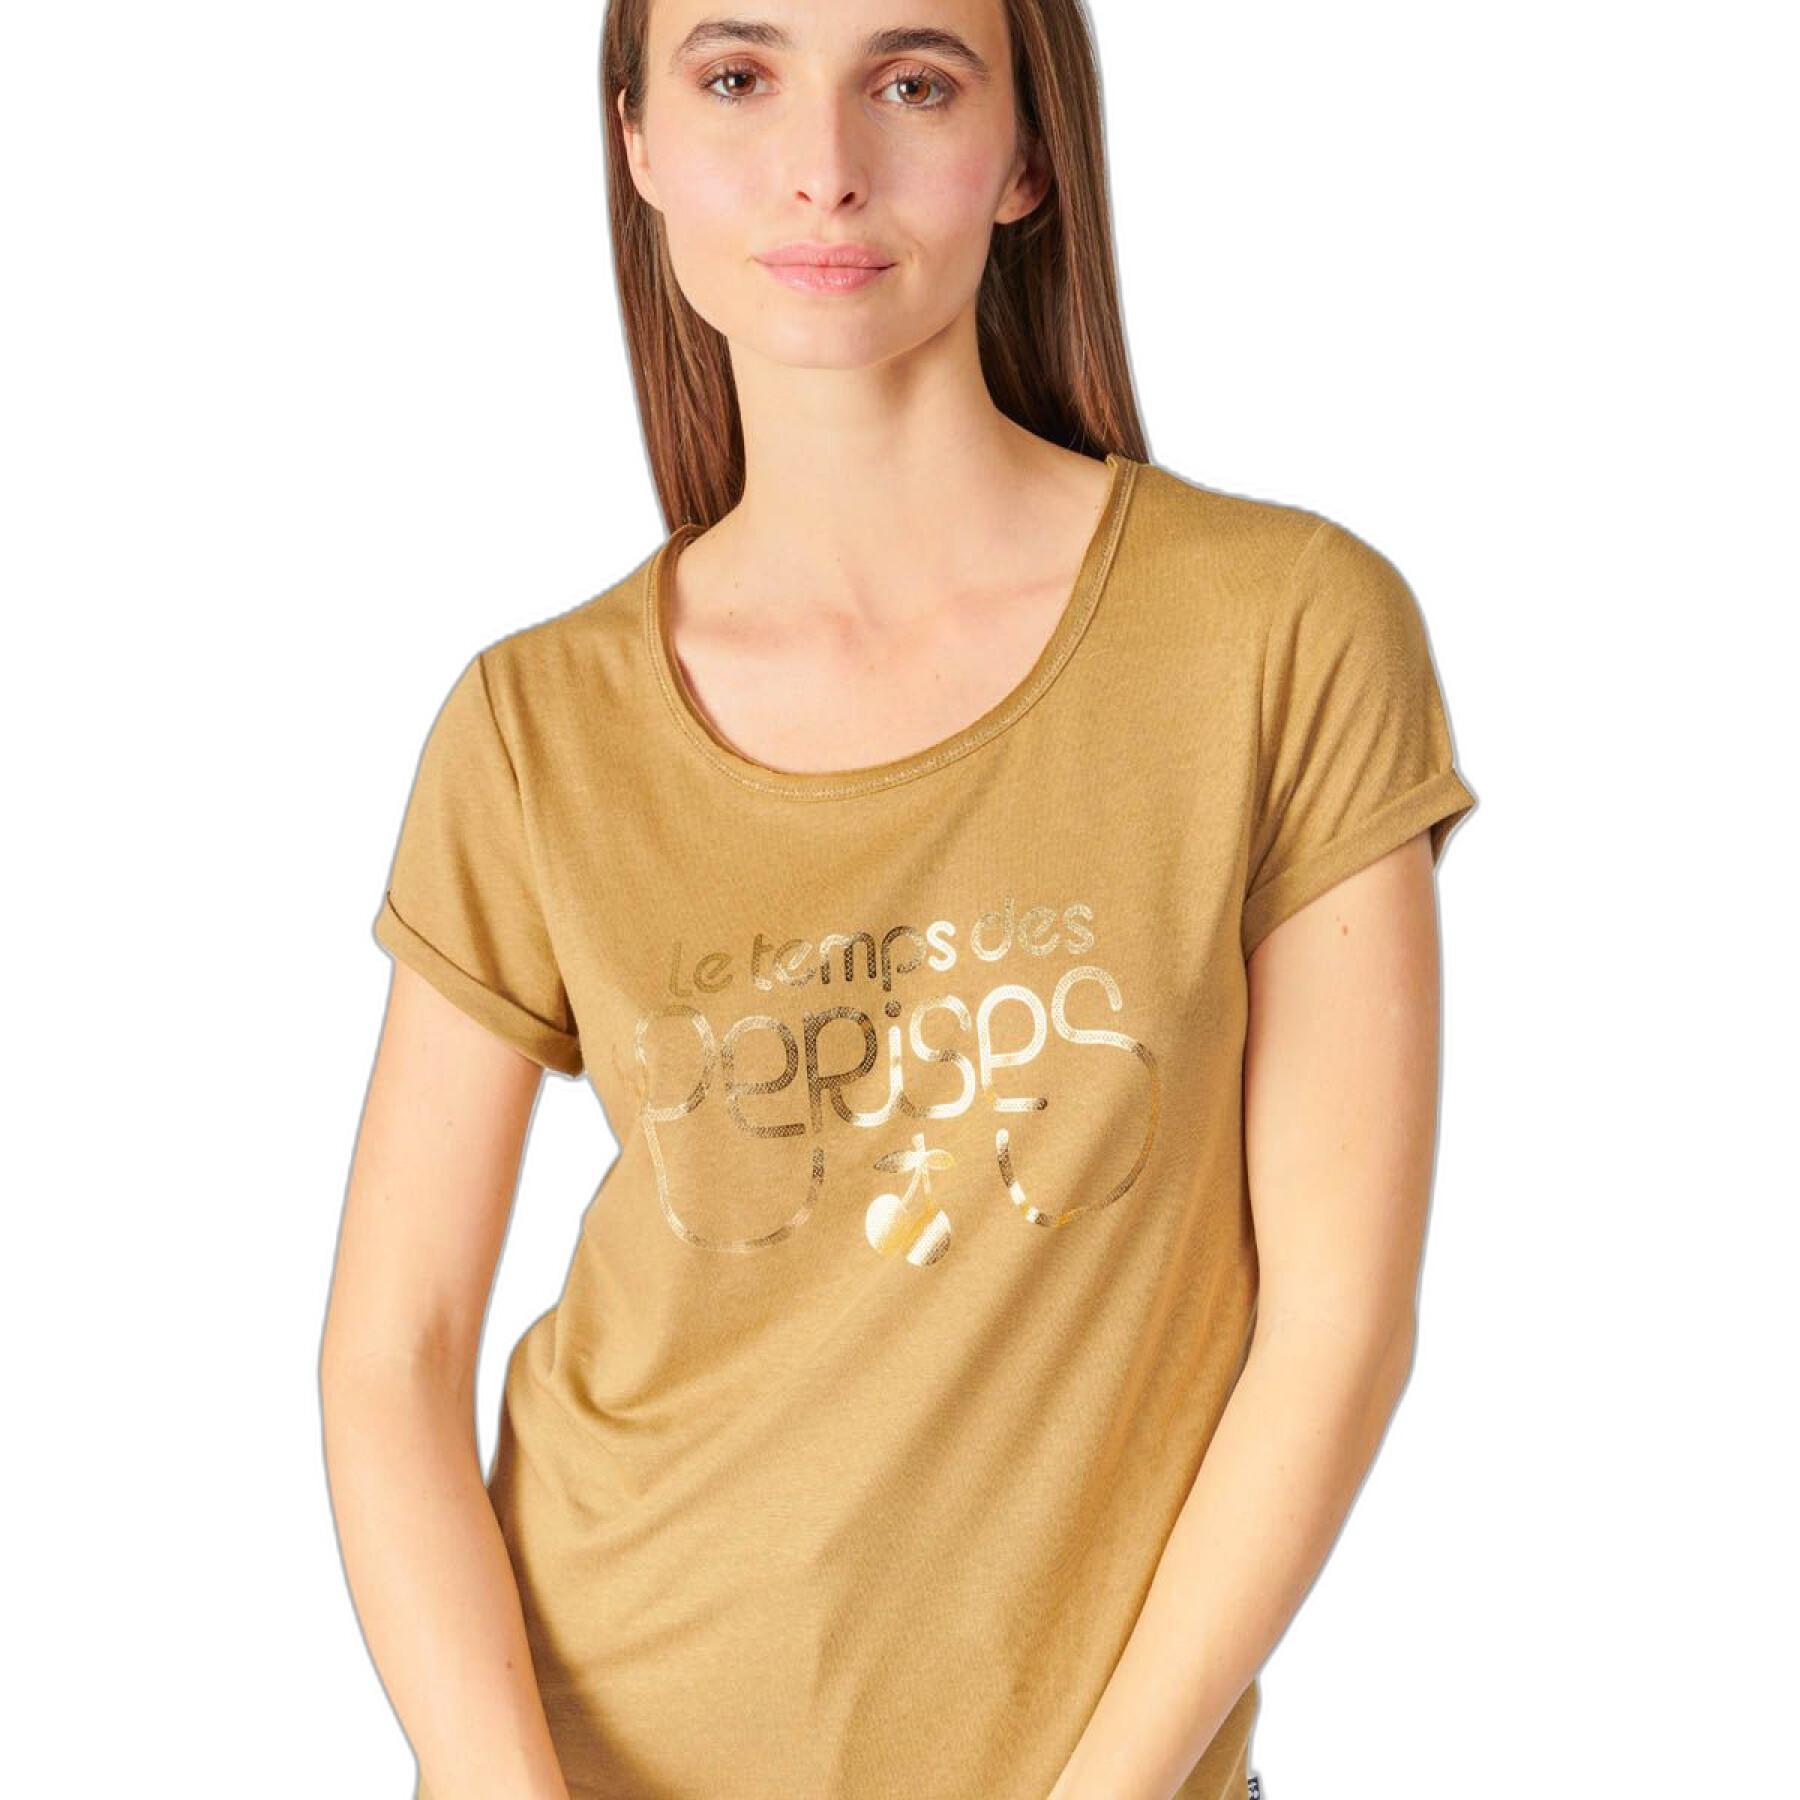 Camiseta de mujer Le Temps des cerises Basitrame